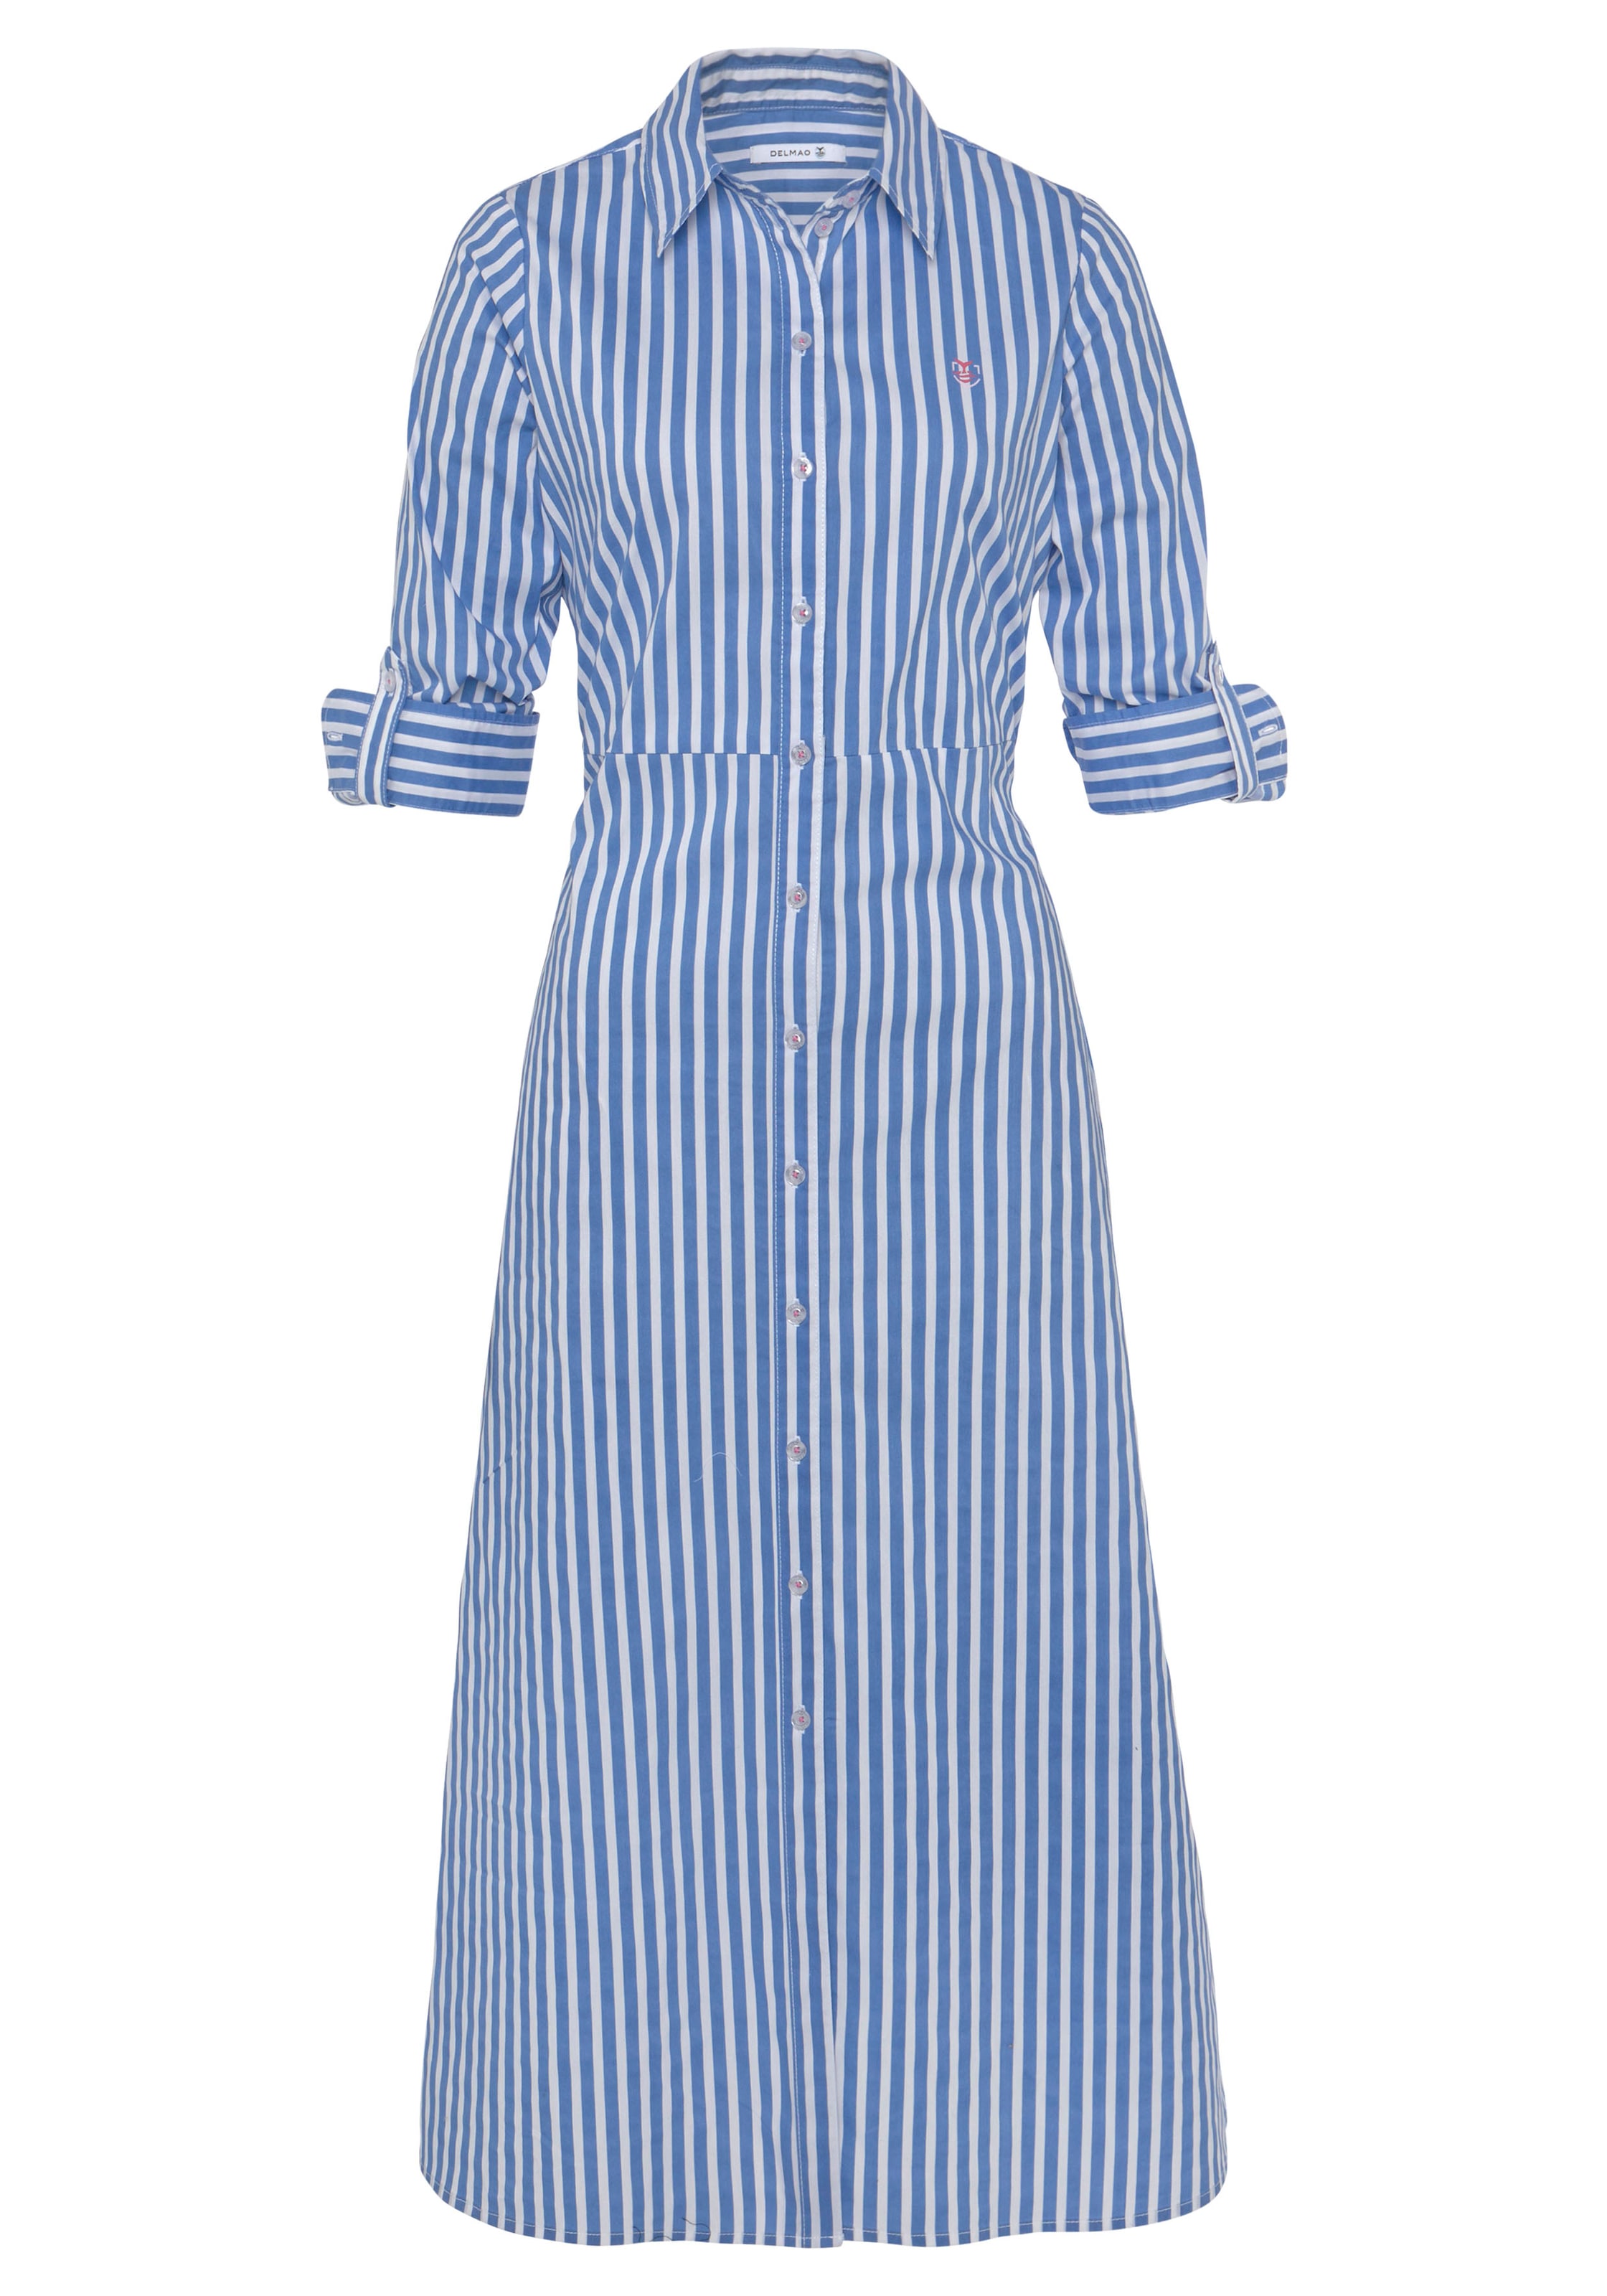 DELMAO Blusenkleid, mit maritimem Knotendetail NEUE bei kaufen OTTO --- MARKE! online